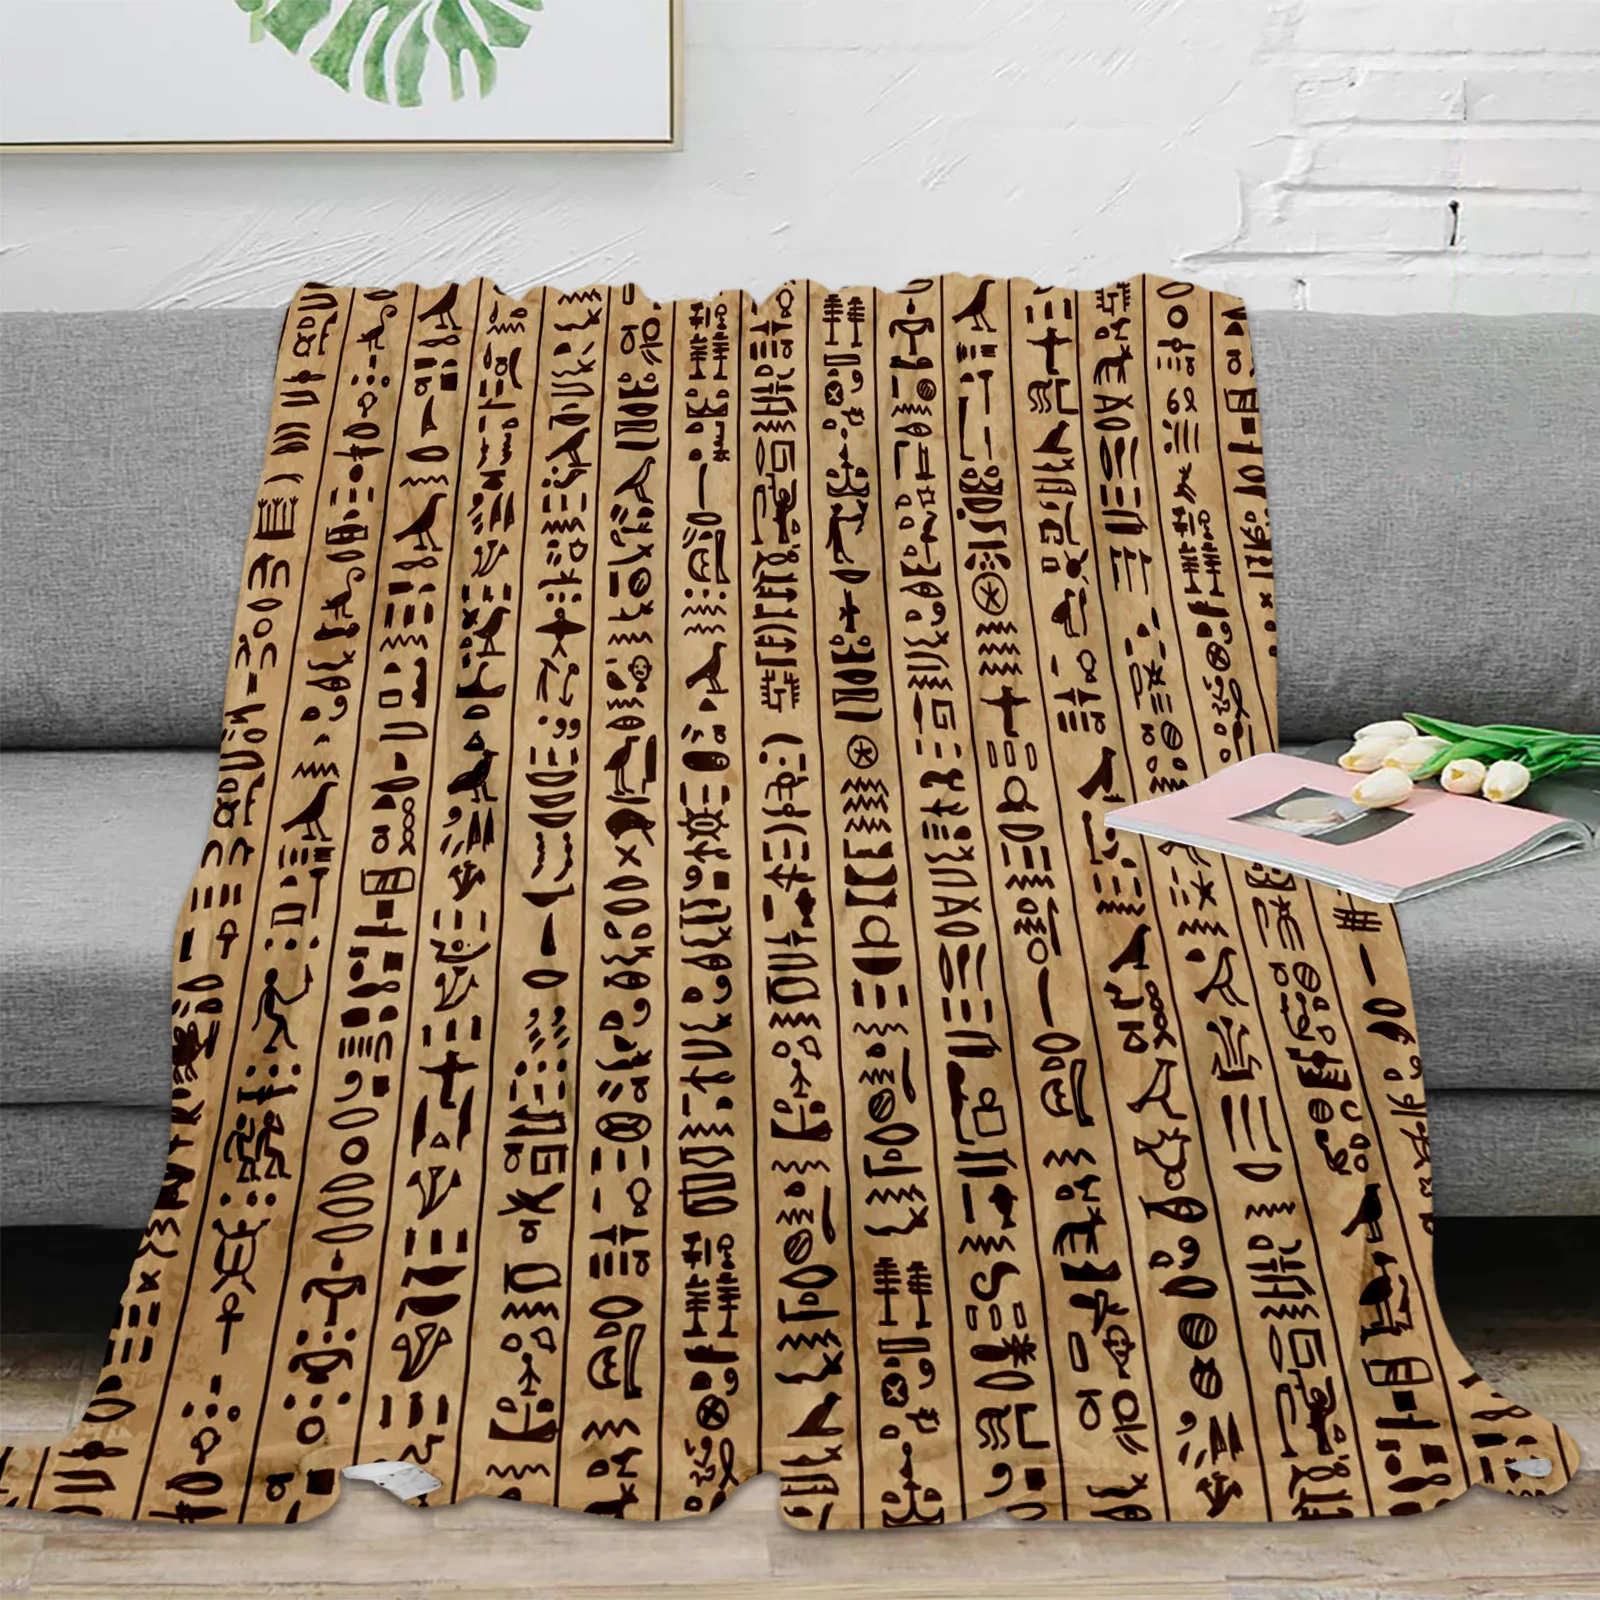 

Фланелевое Одеяло в стиле ретро, тёплый плед из микрофибры в стиле древнего Египта, хироглифов, покрывало для спальни